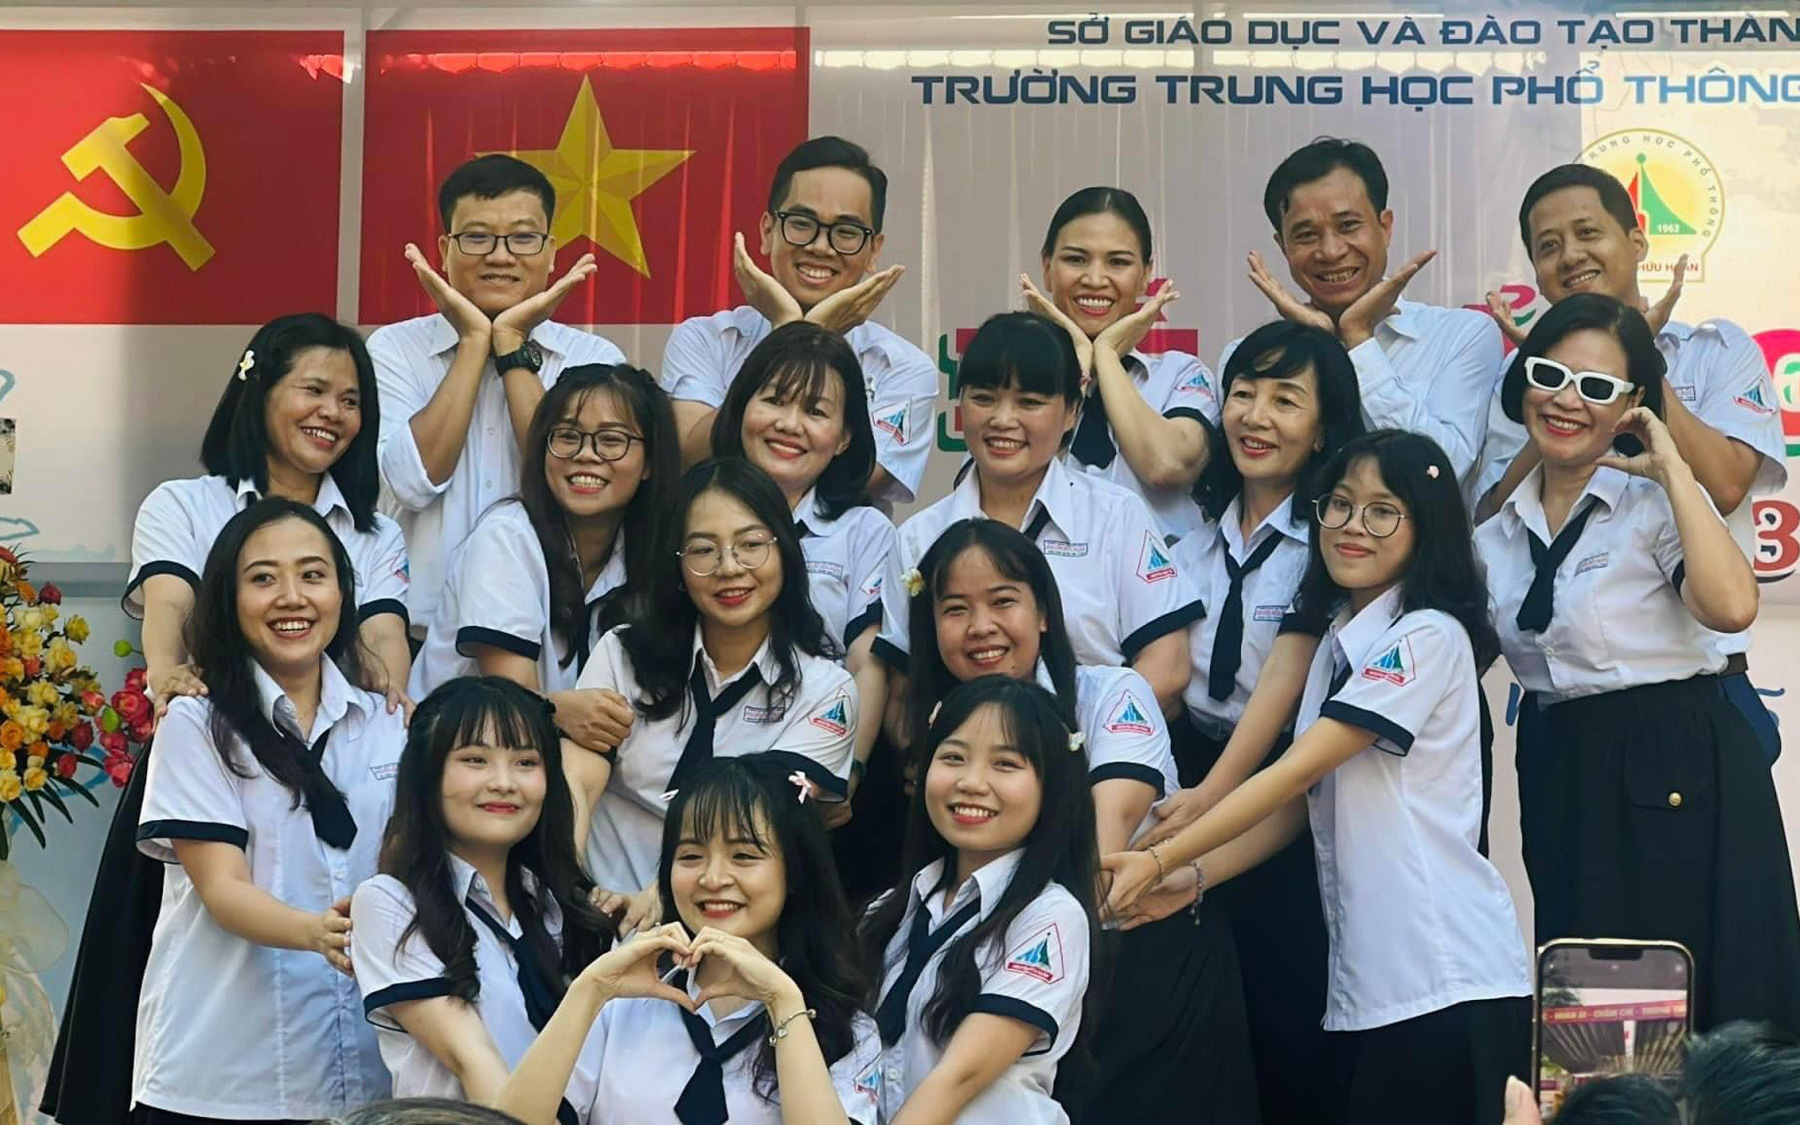 Hình ảnh dễ thương của giáo viên Trường THPT Nguyễn Hữu Huân trong đồng phục học sinh